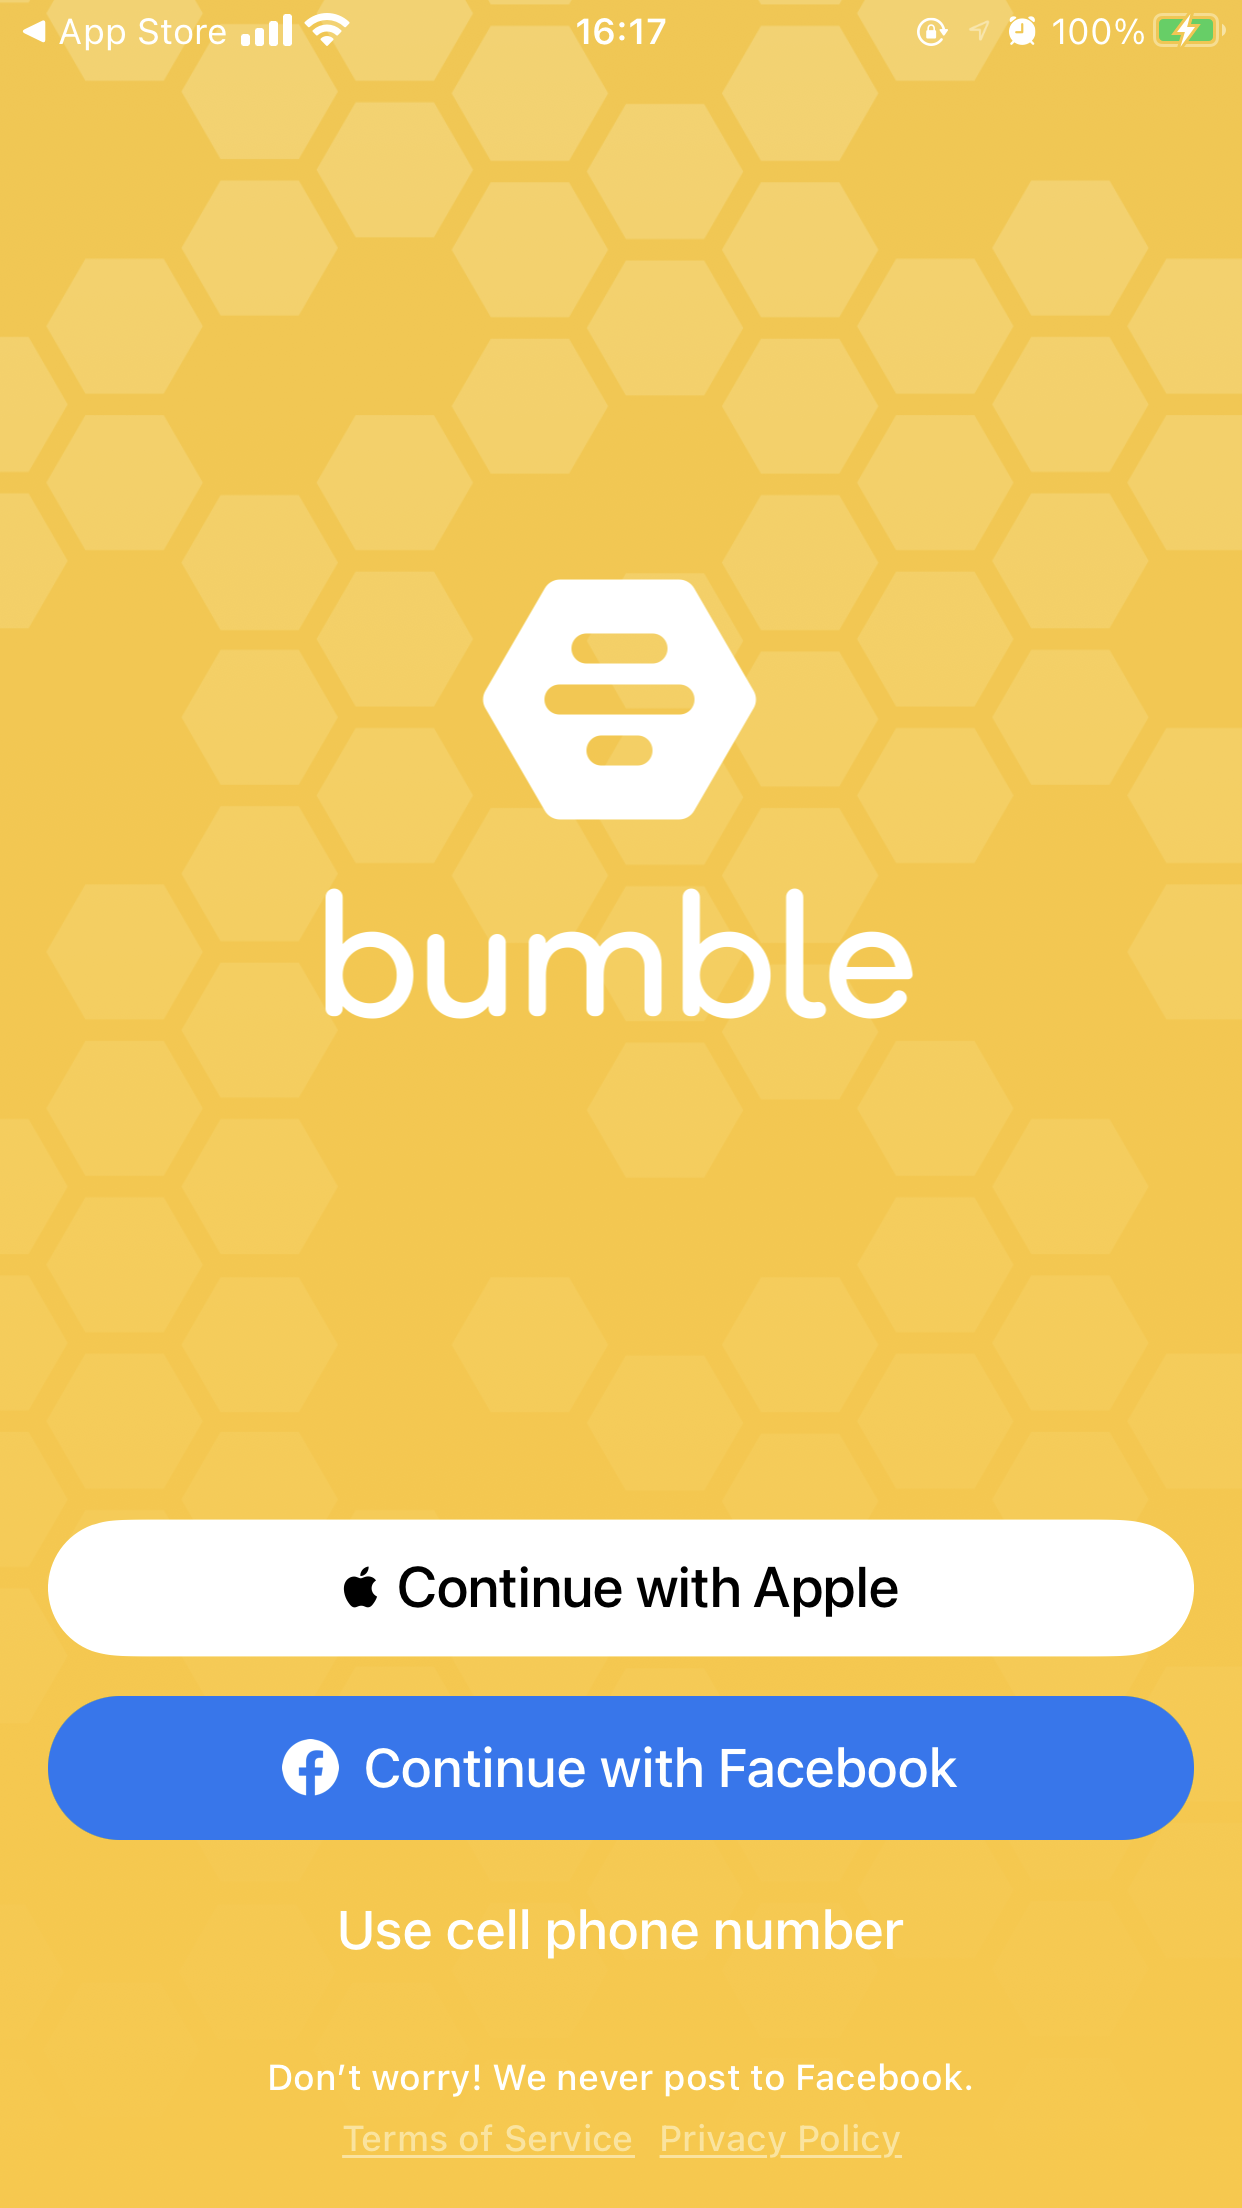 Bumble là một ứng dụng hẹn hò trực tuyến nổi tiếng trên toàn thế giới, với các tính năng độc đáo, như việc nữ giới có quyền kiểm soát kết nối. Nhấp vào hình ảnh để khám phá thêm về ứng dụng hẹn hò này nhé.